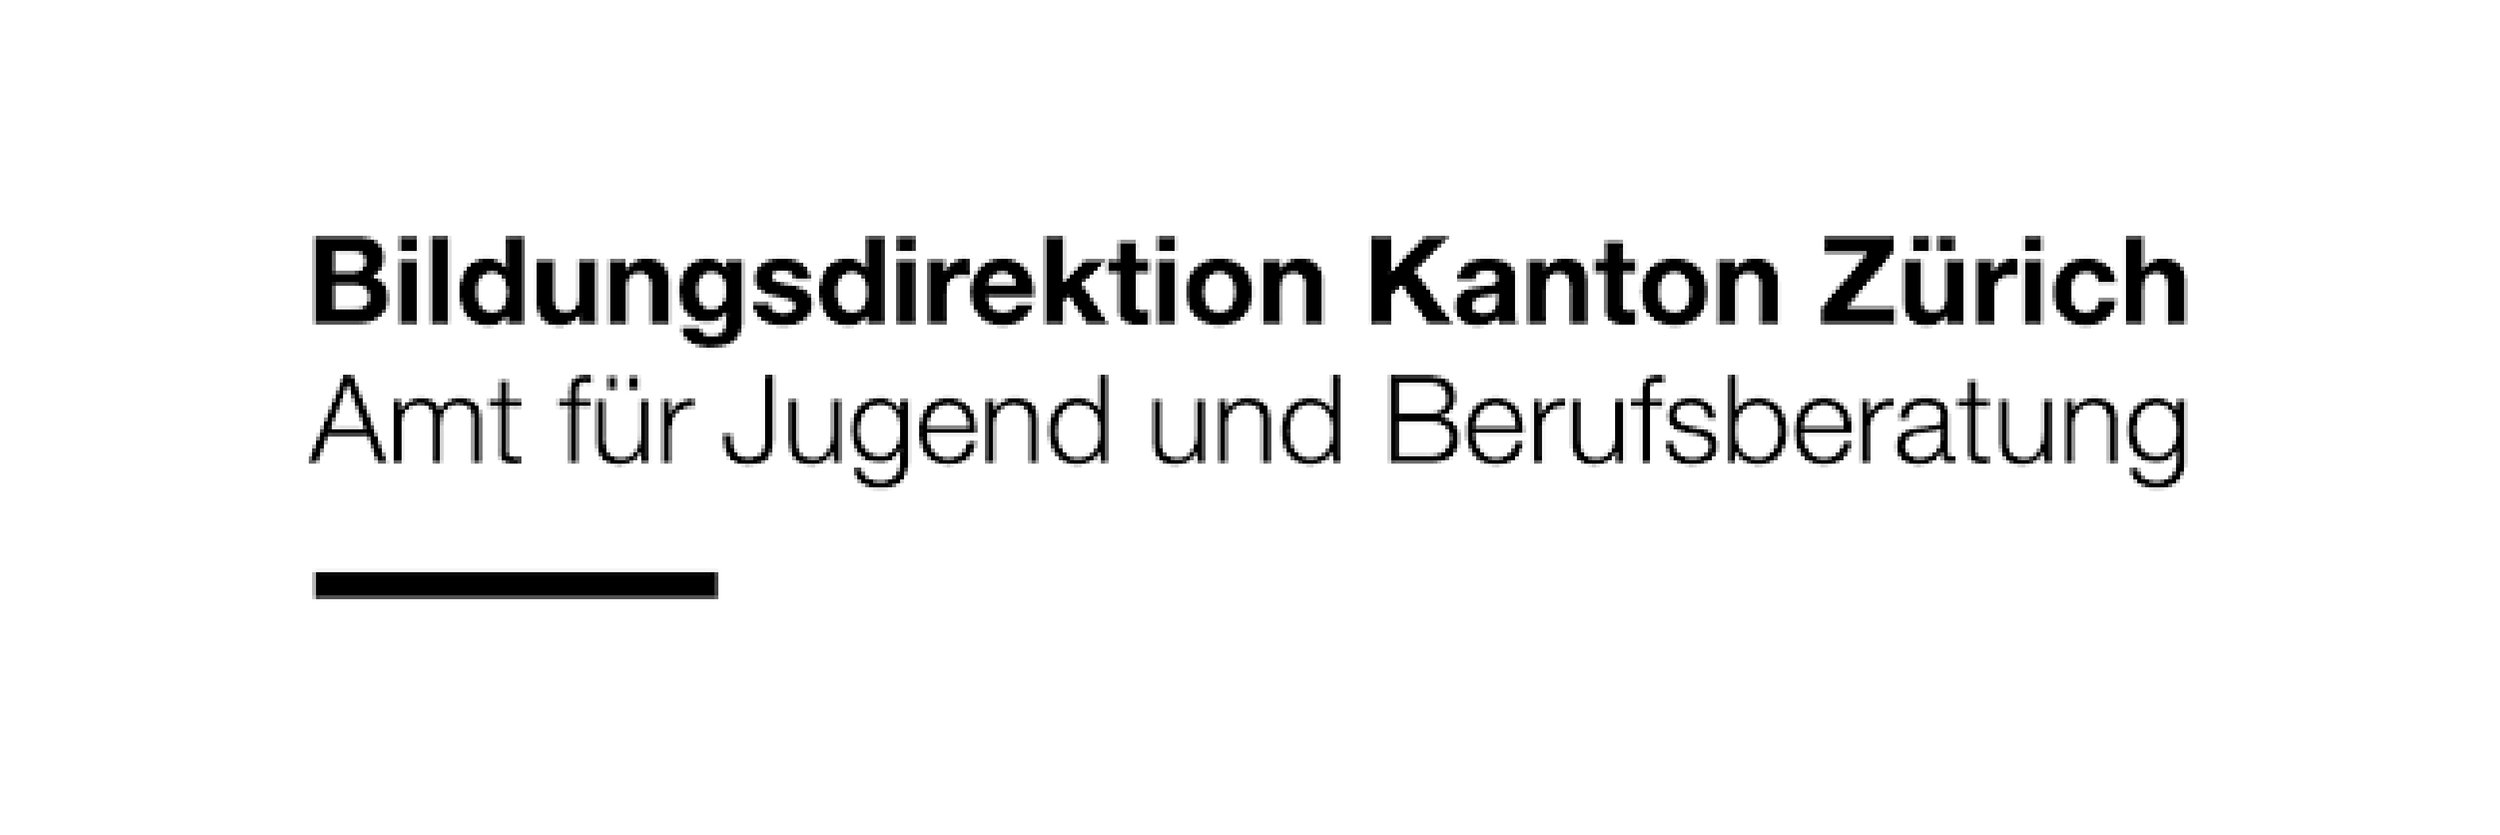 Bildungsdirektion Kanton Zürich